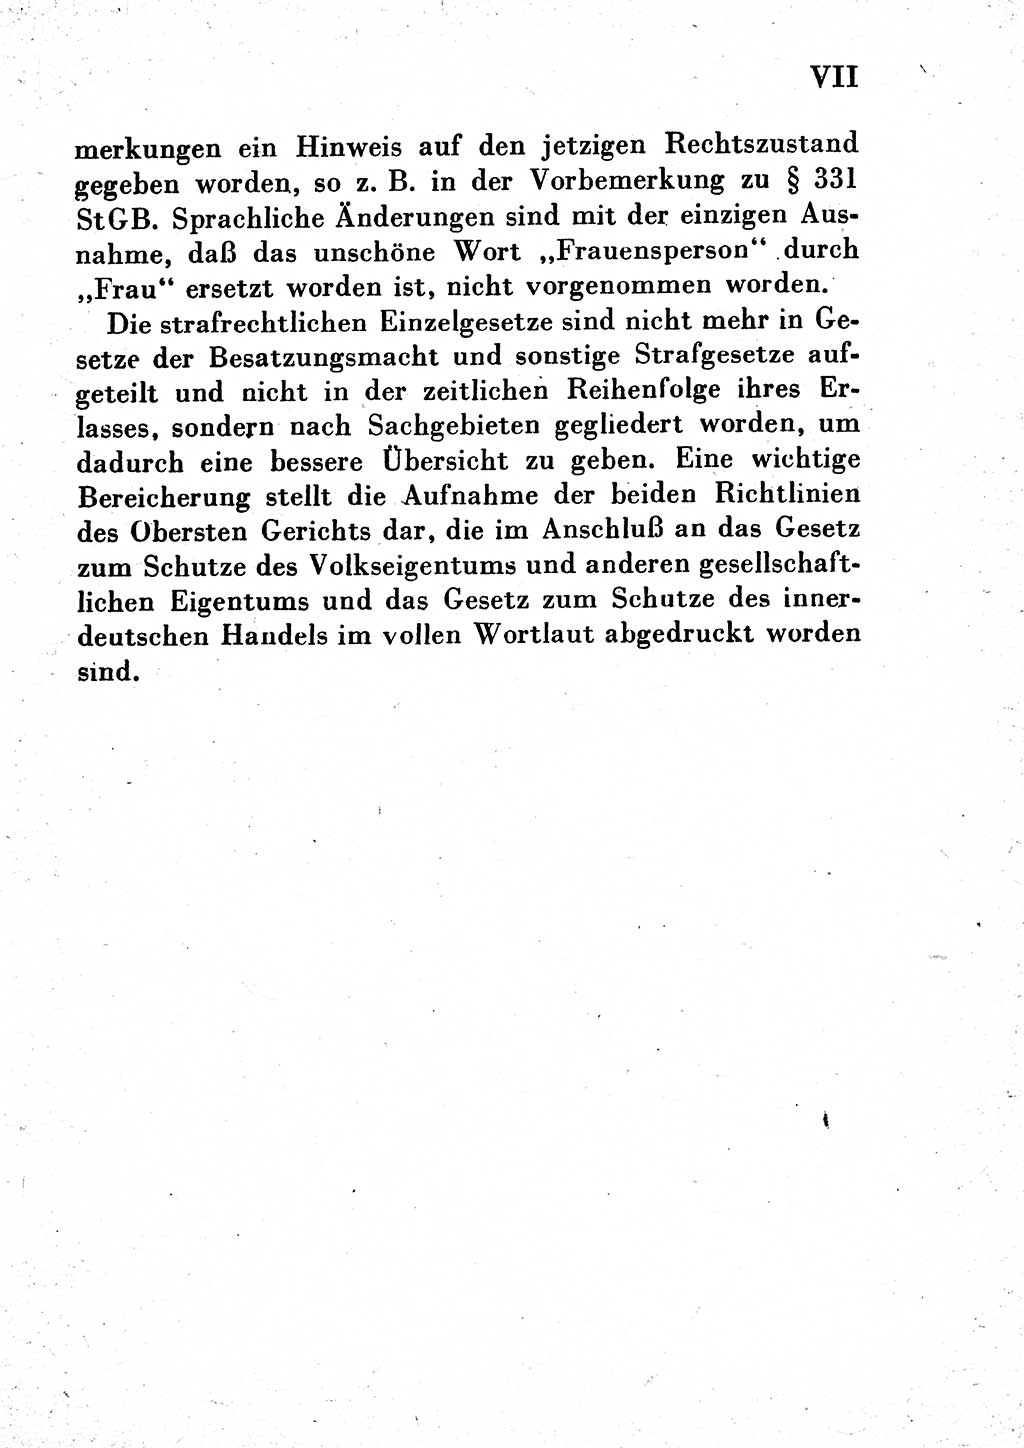 Einleitung Strafgesetzbuch (StGB) und andere Strafgesetze [Deutsche Demokratische Republik (DDR)] 1954, Seite 7 (Einl. StGB Strafges. DDR 1954, S. 7)